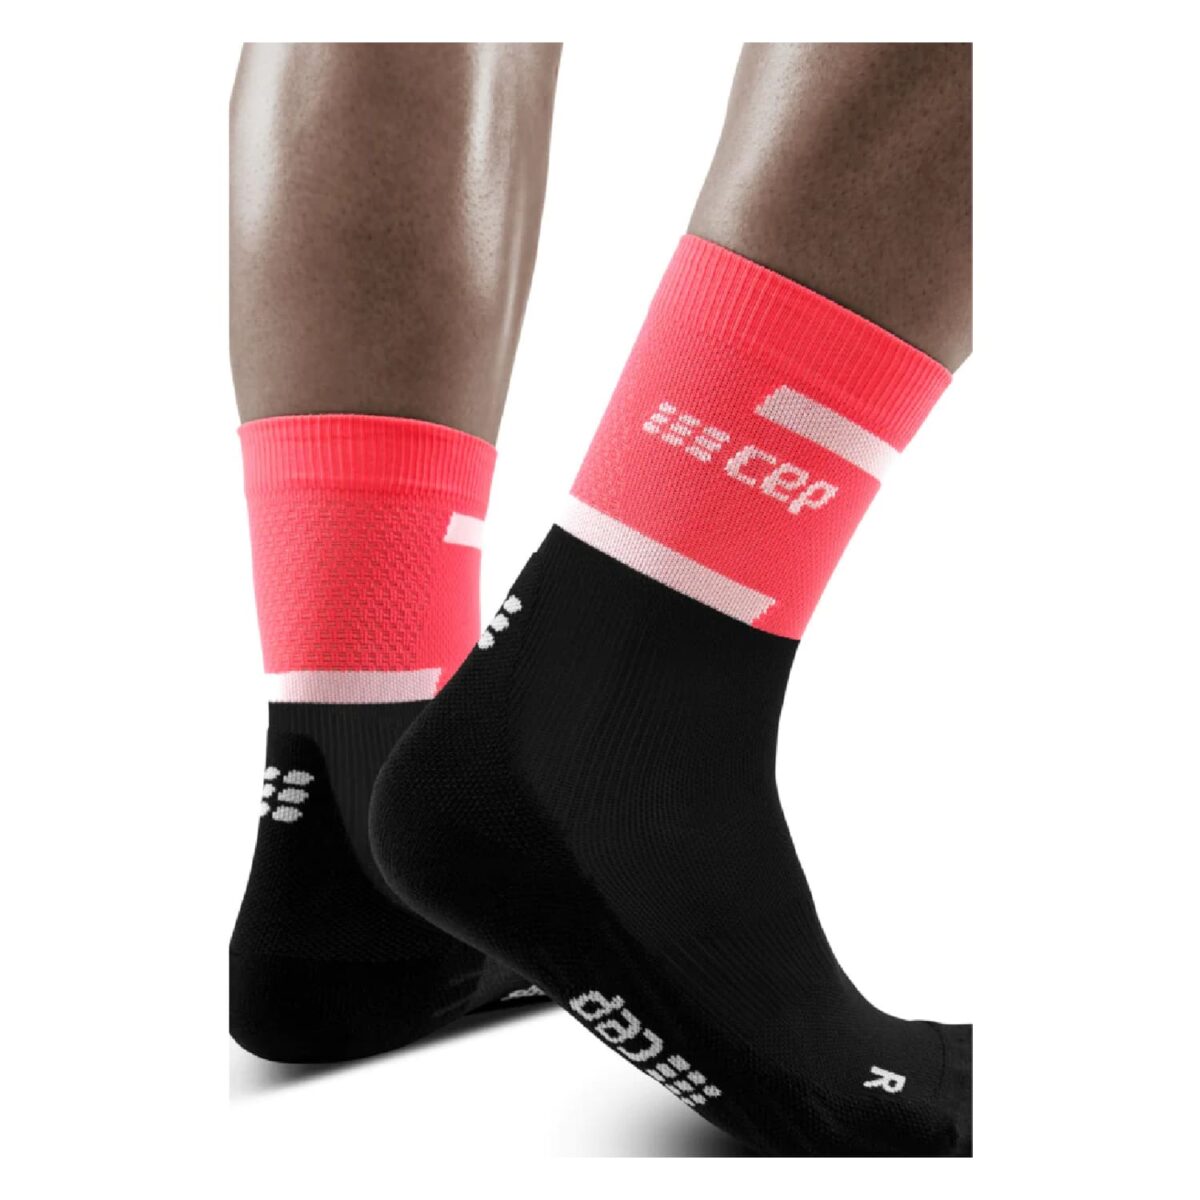 mid-cut-running-compression-socks-pink-black-2